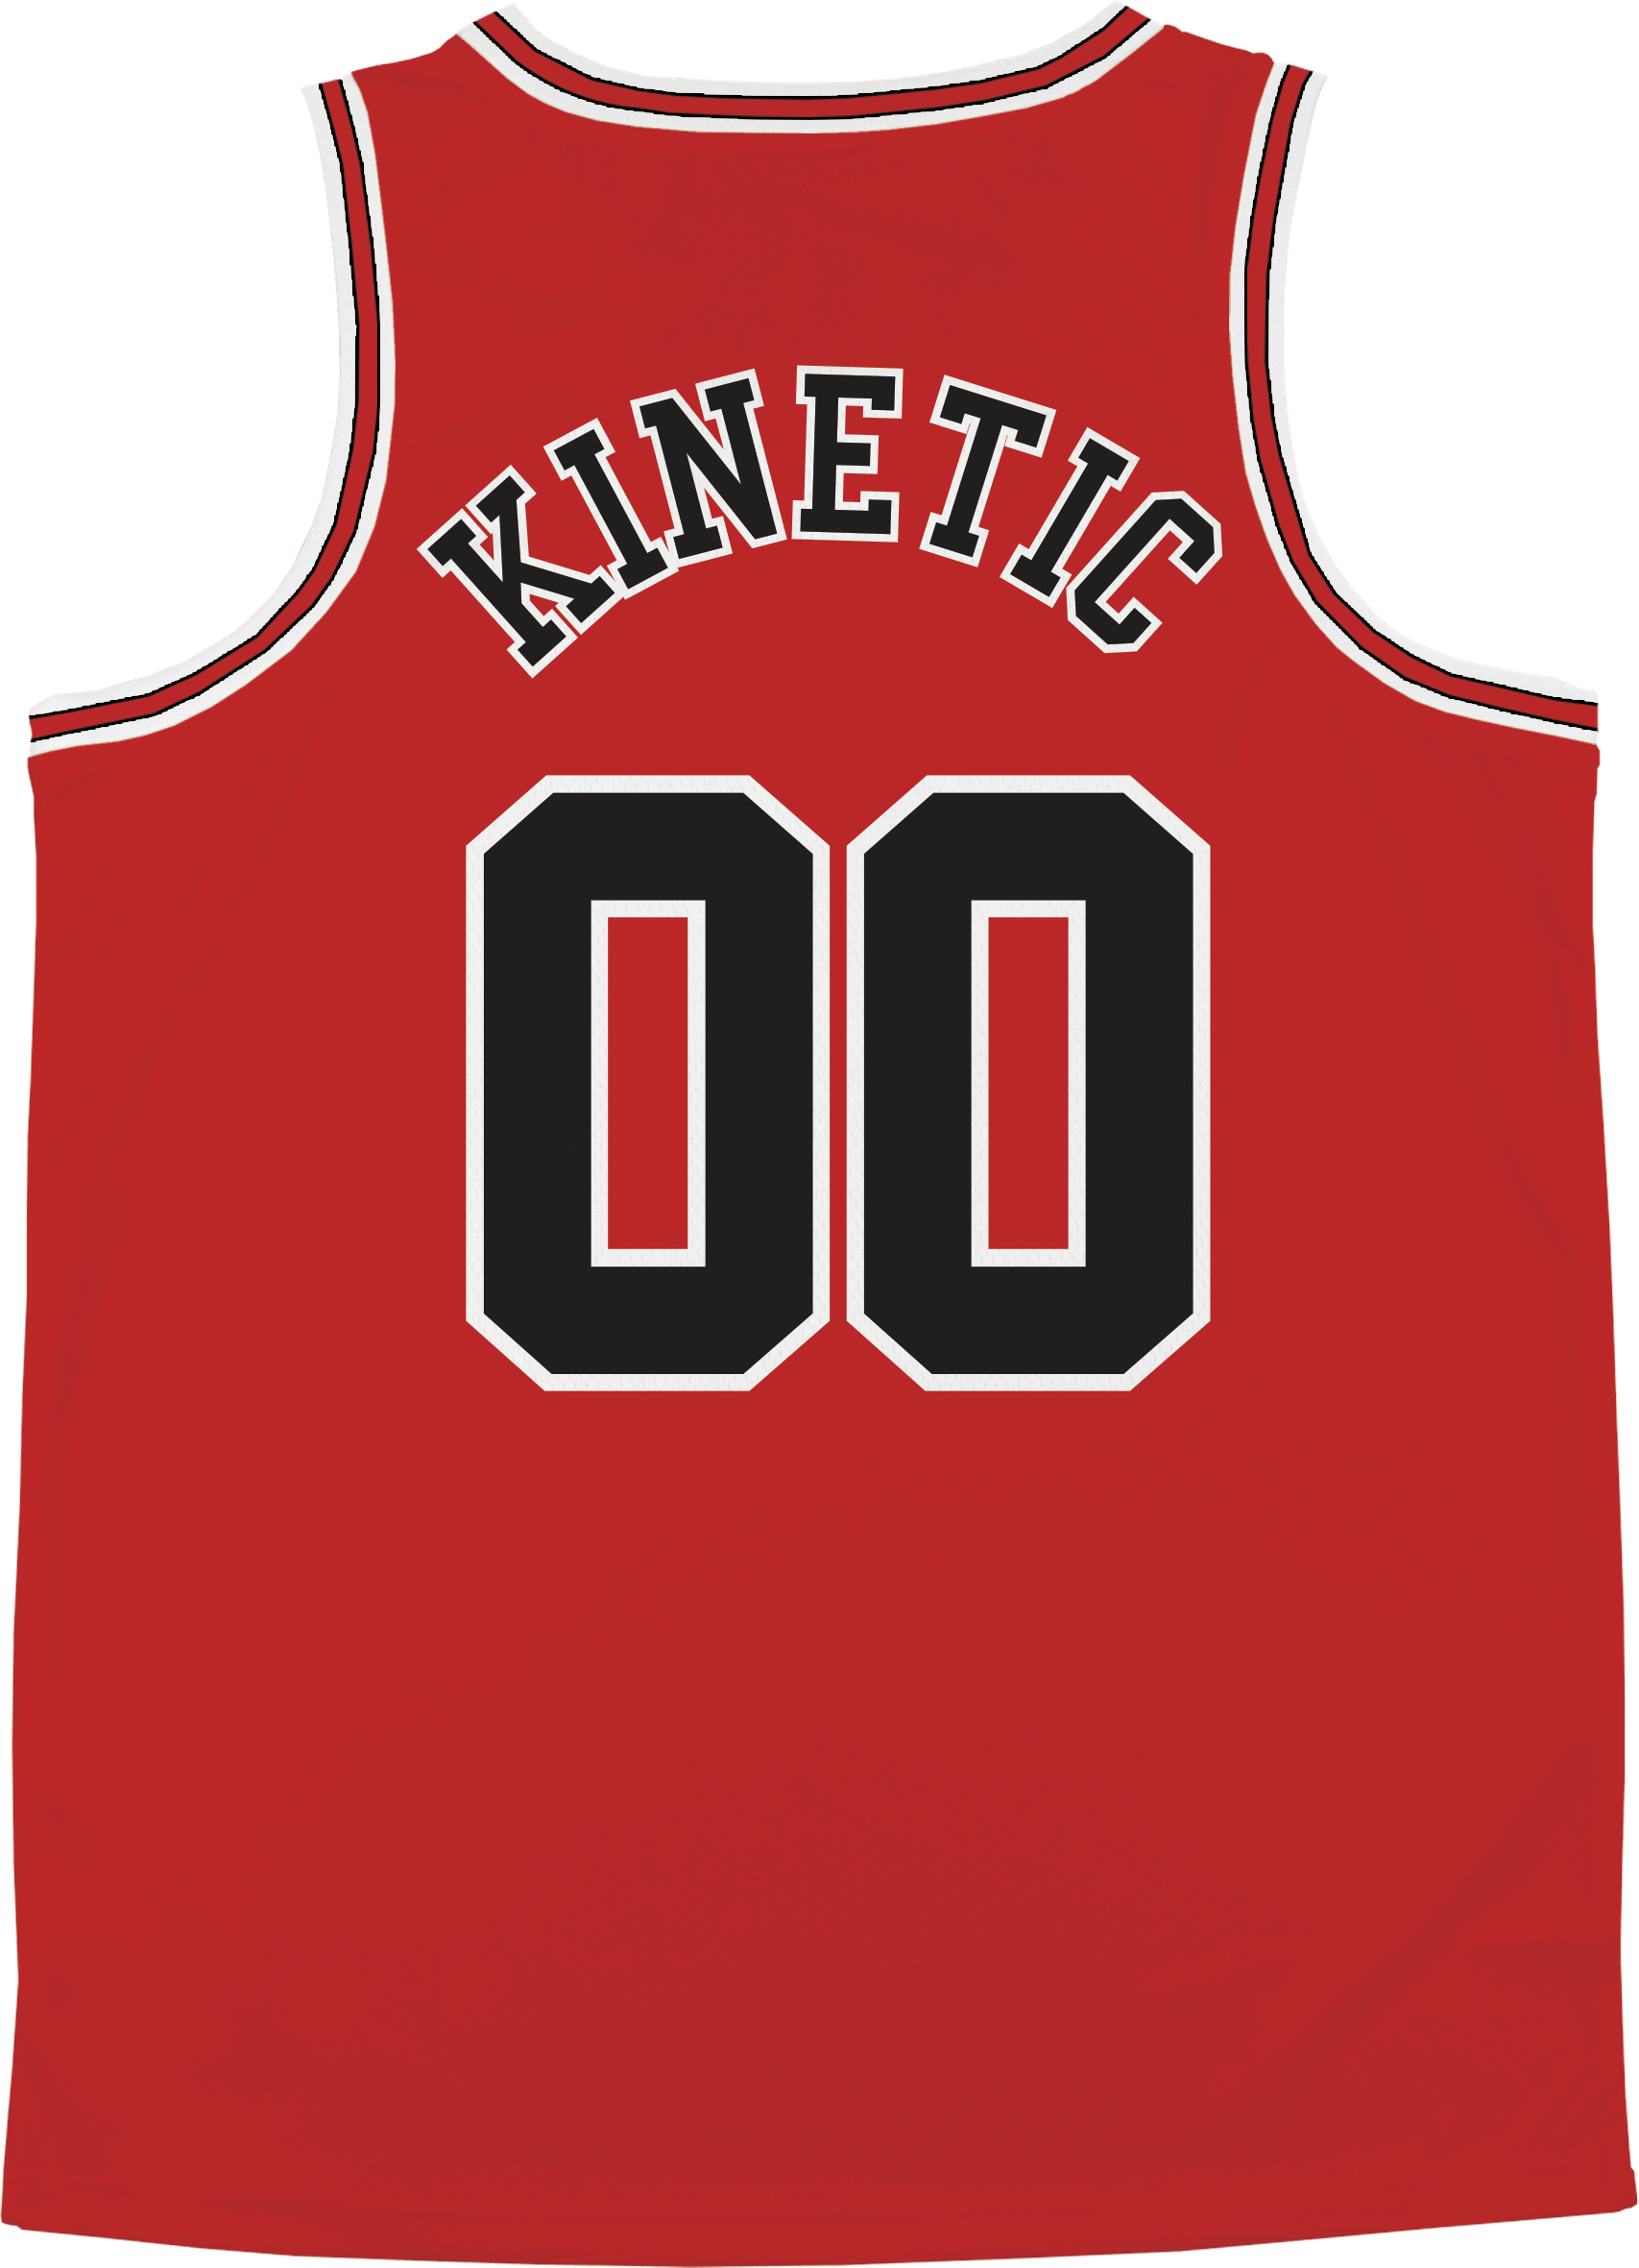 Phi Kappa Tau - Big Red Basketball Jersey - Kinetic Society